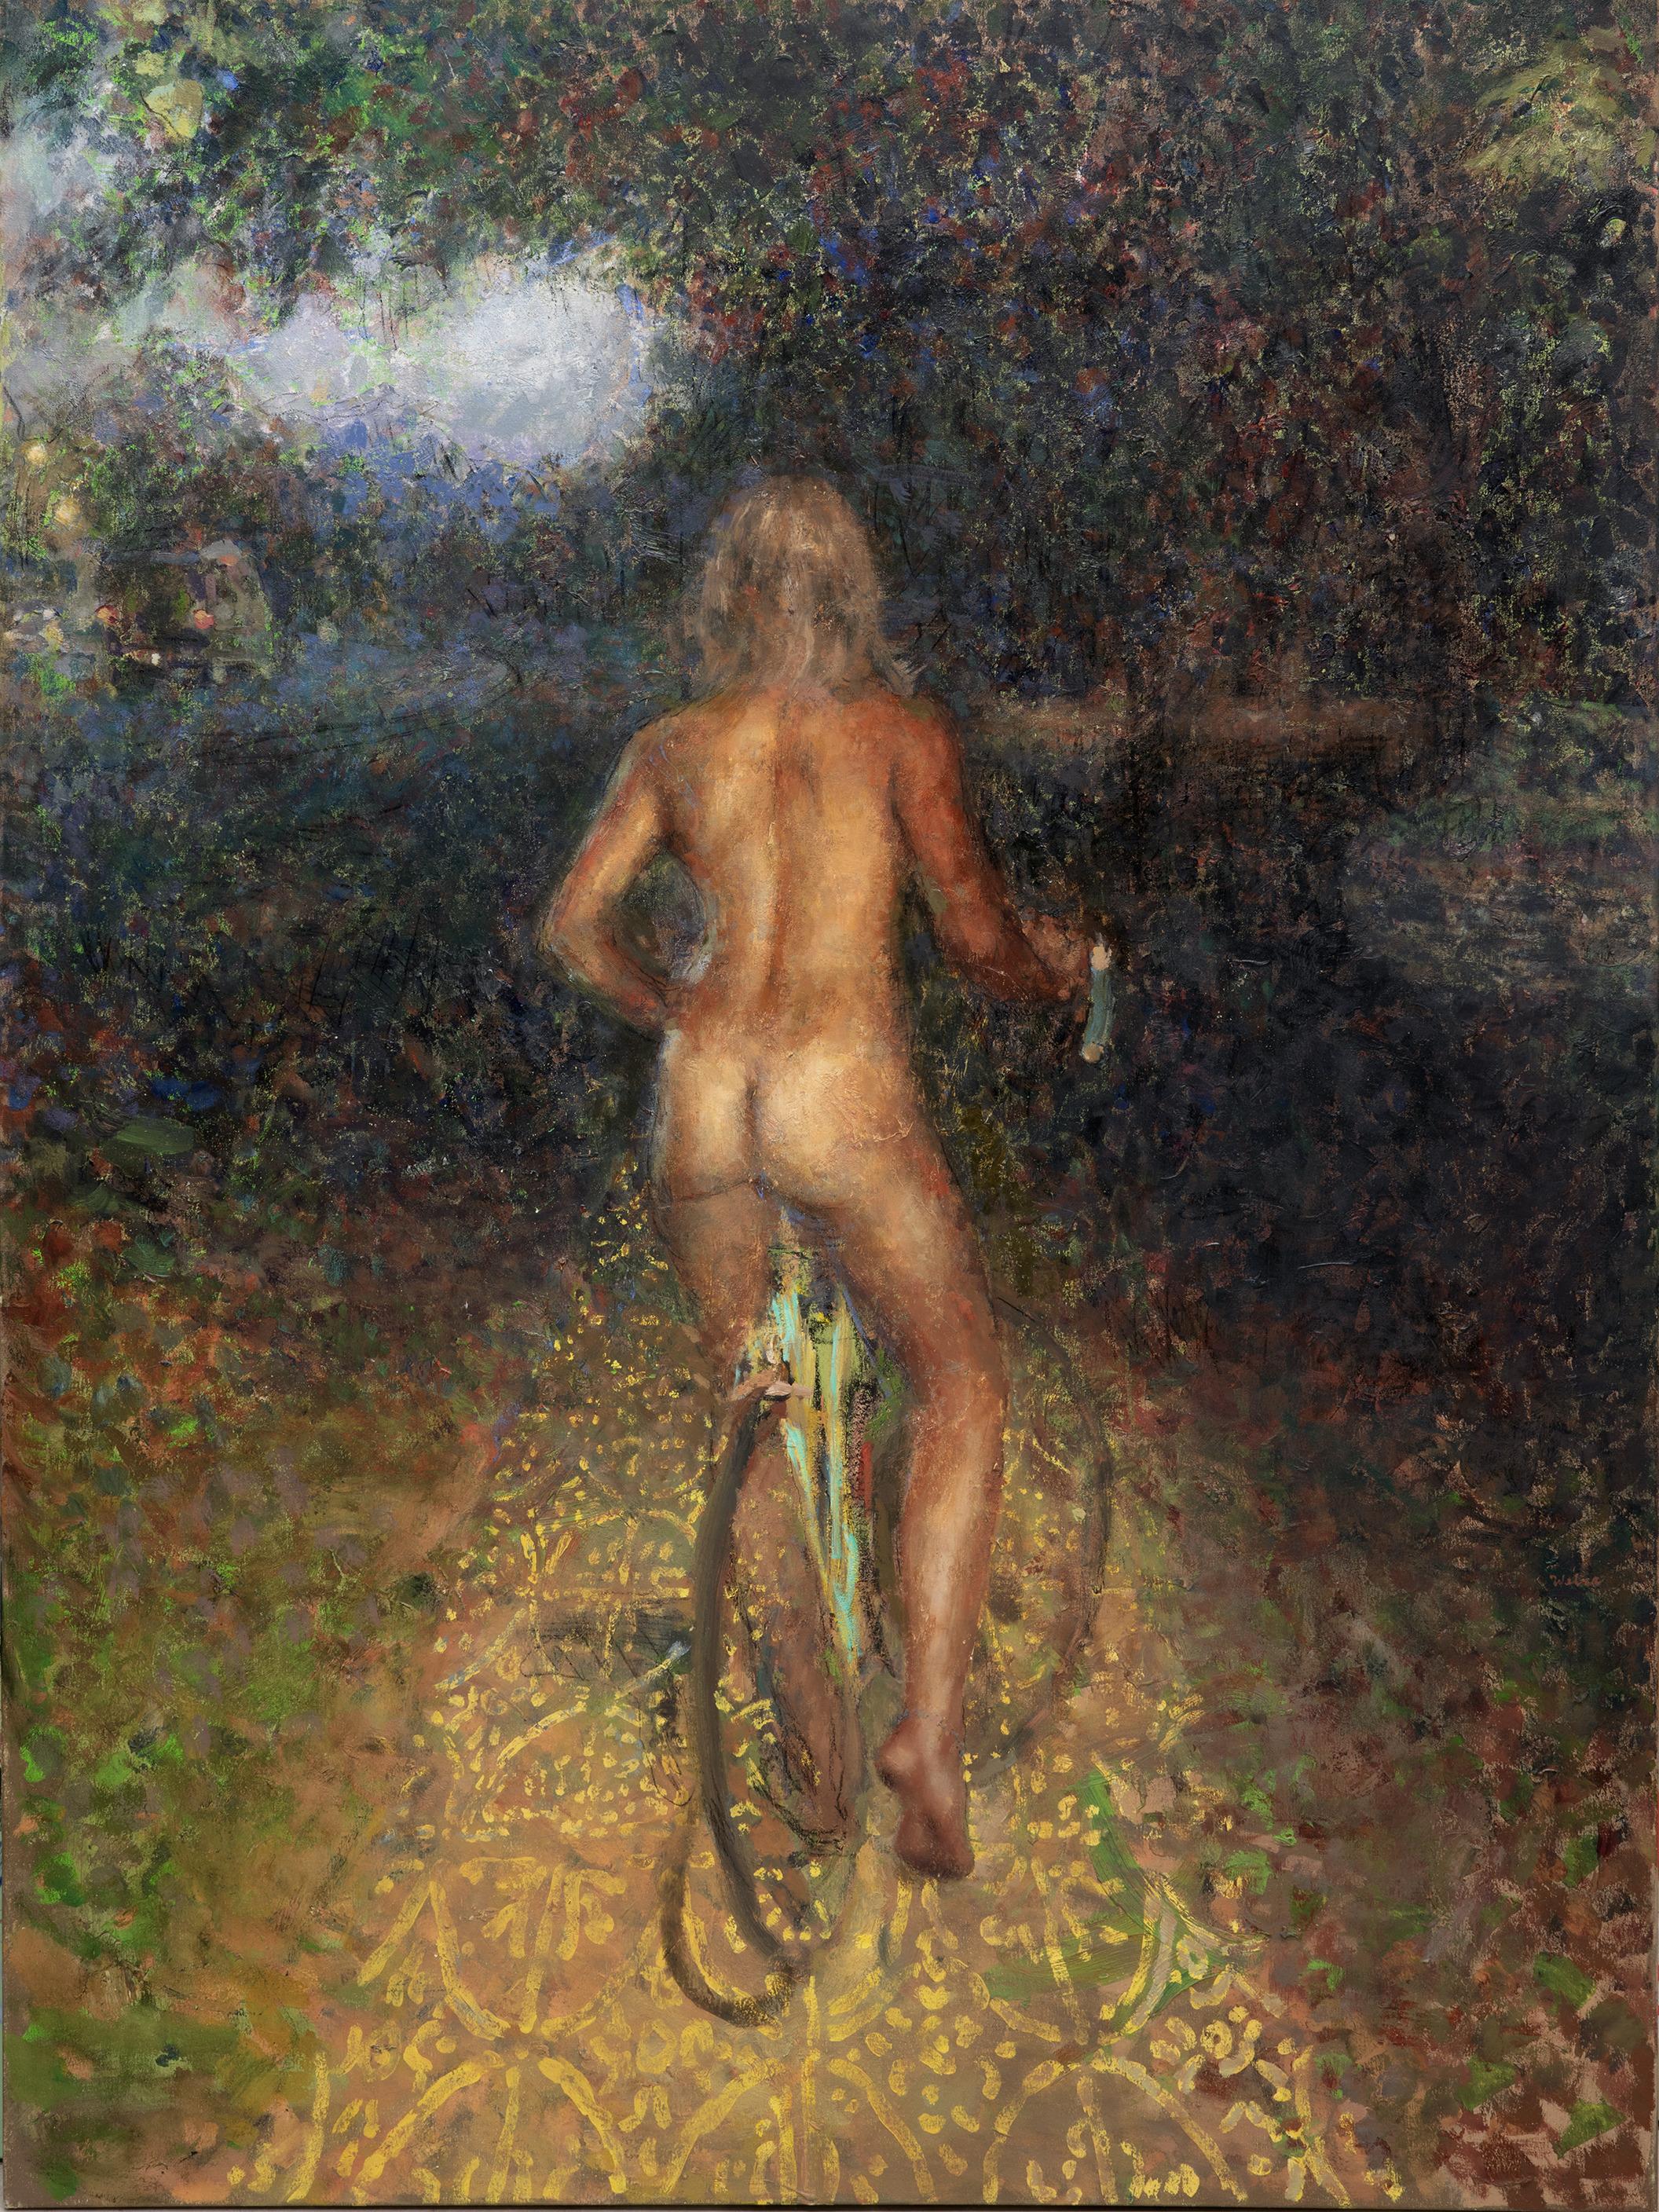 Nude Painting Nick Weber - « Alexandra Leaving », réaliste et abstraite fusionnée dans une peinture à l'huile de femme à vélo